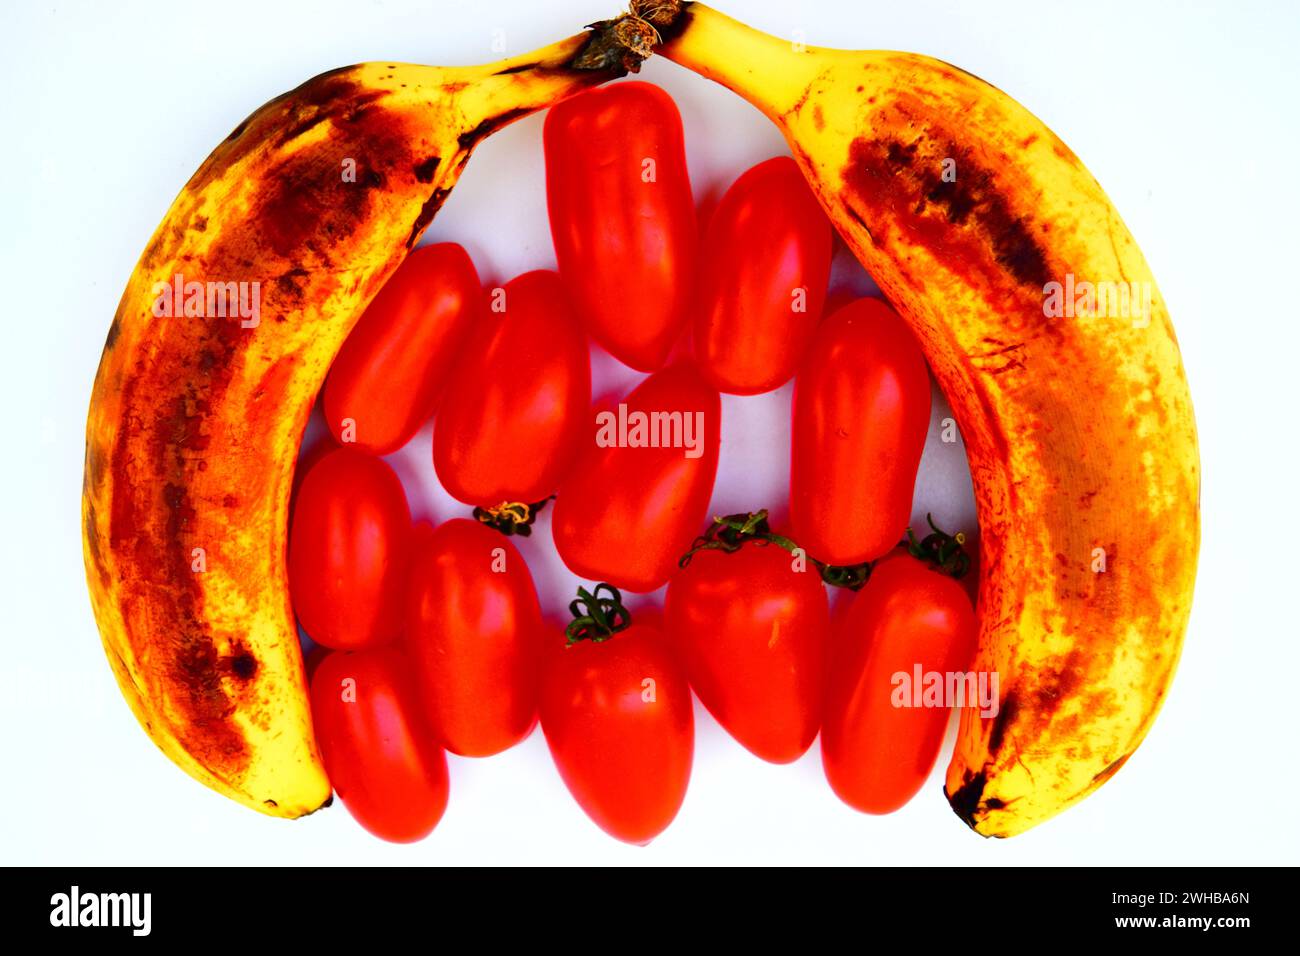 Due banane mature a forma di campana con pomodori rossi al centro. Foto Stock